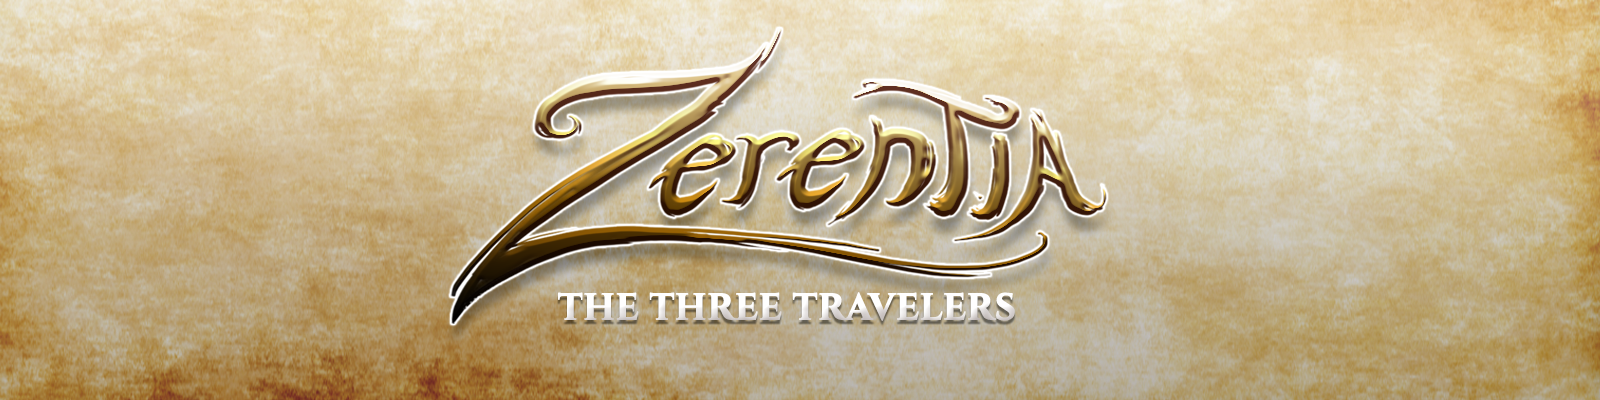 Logo Zerentia